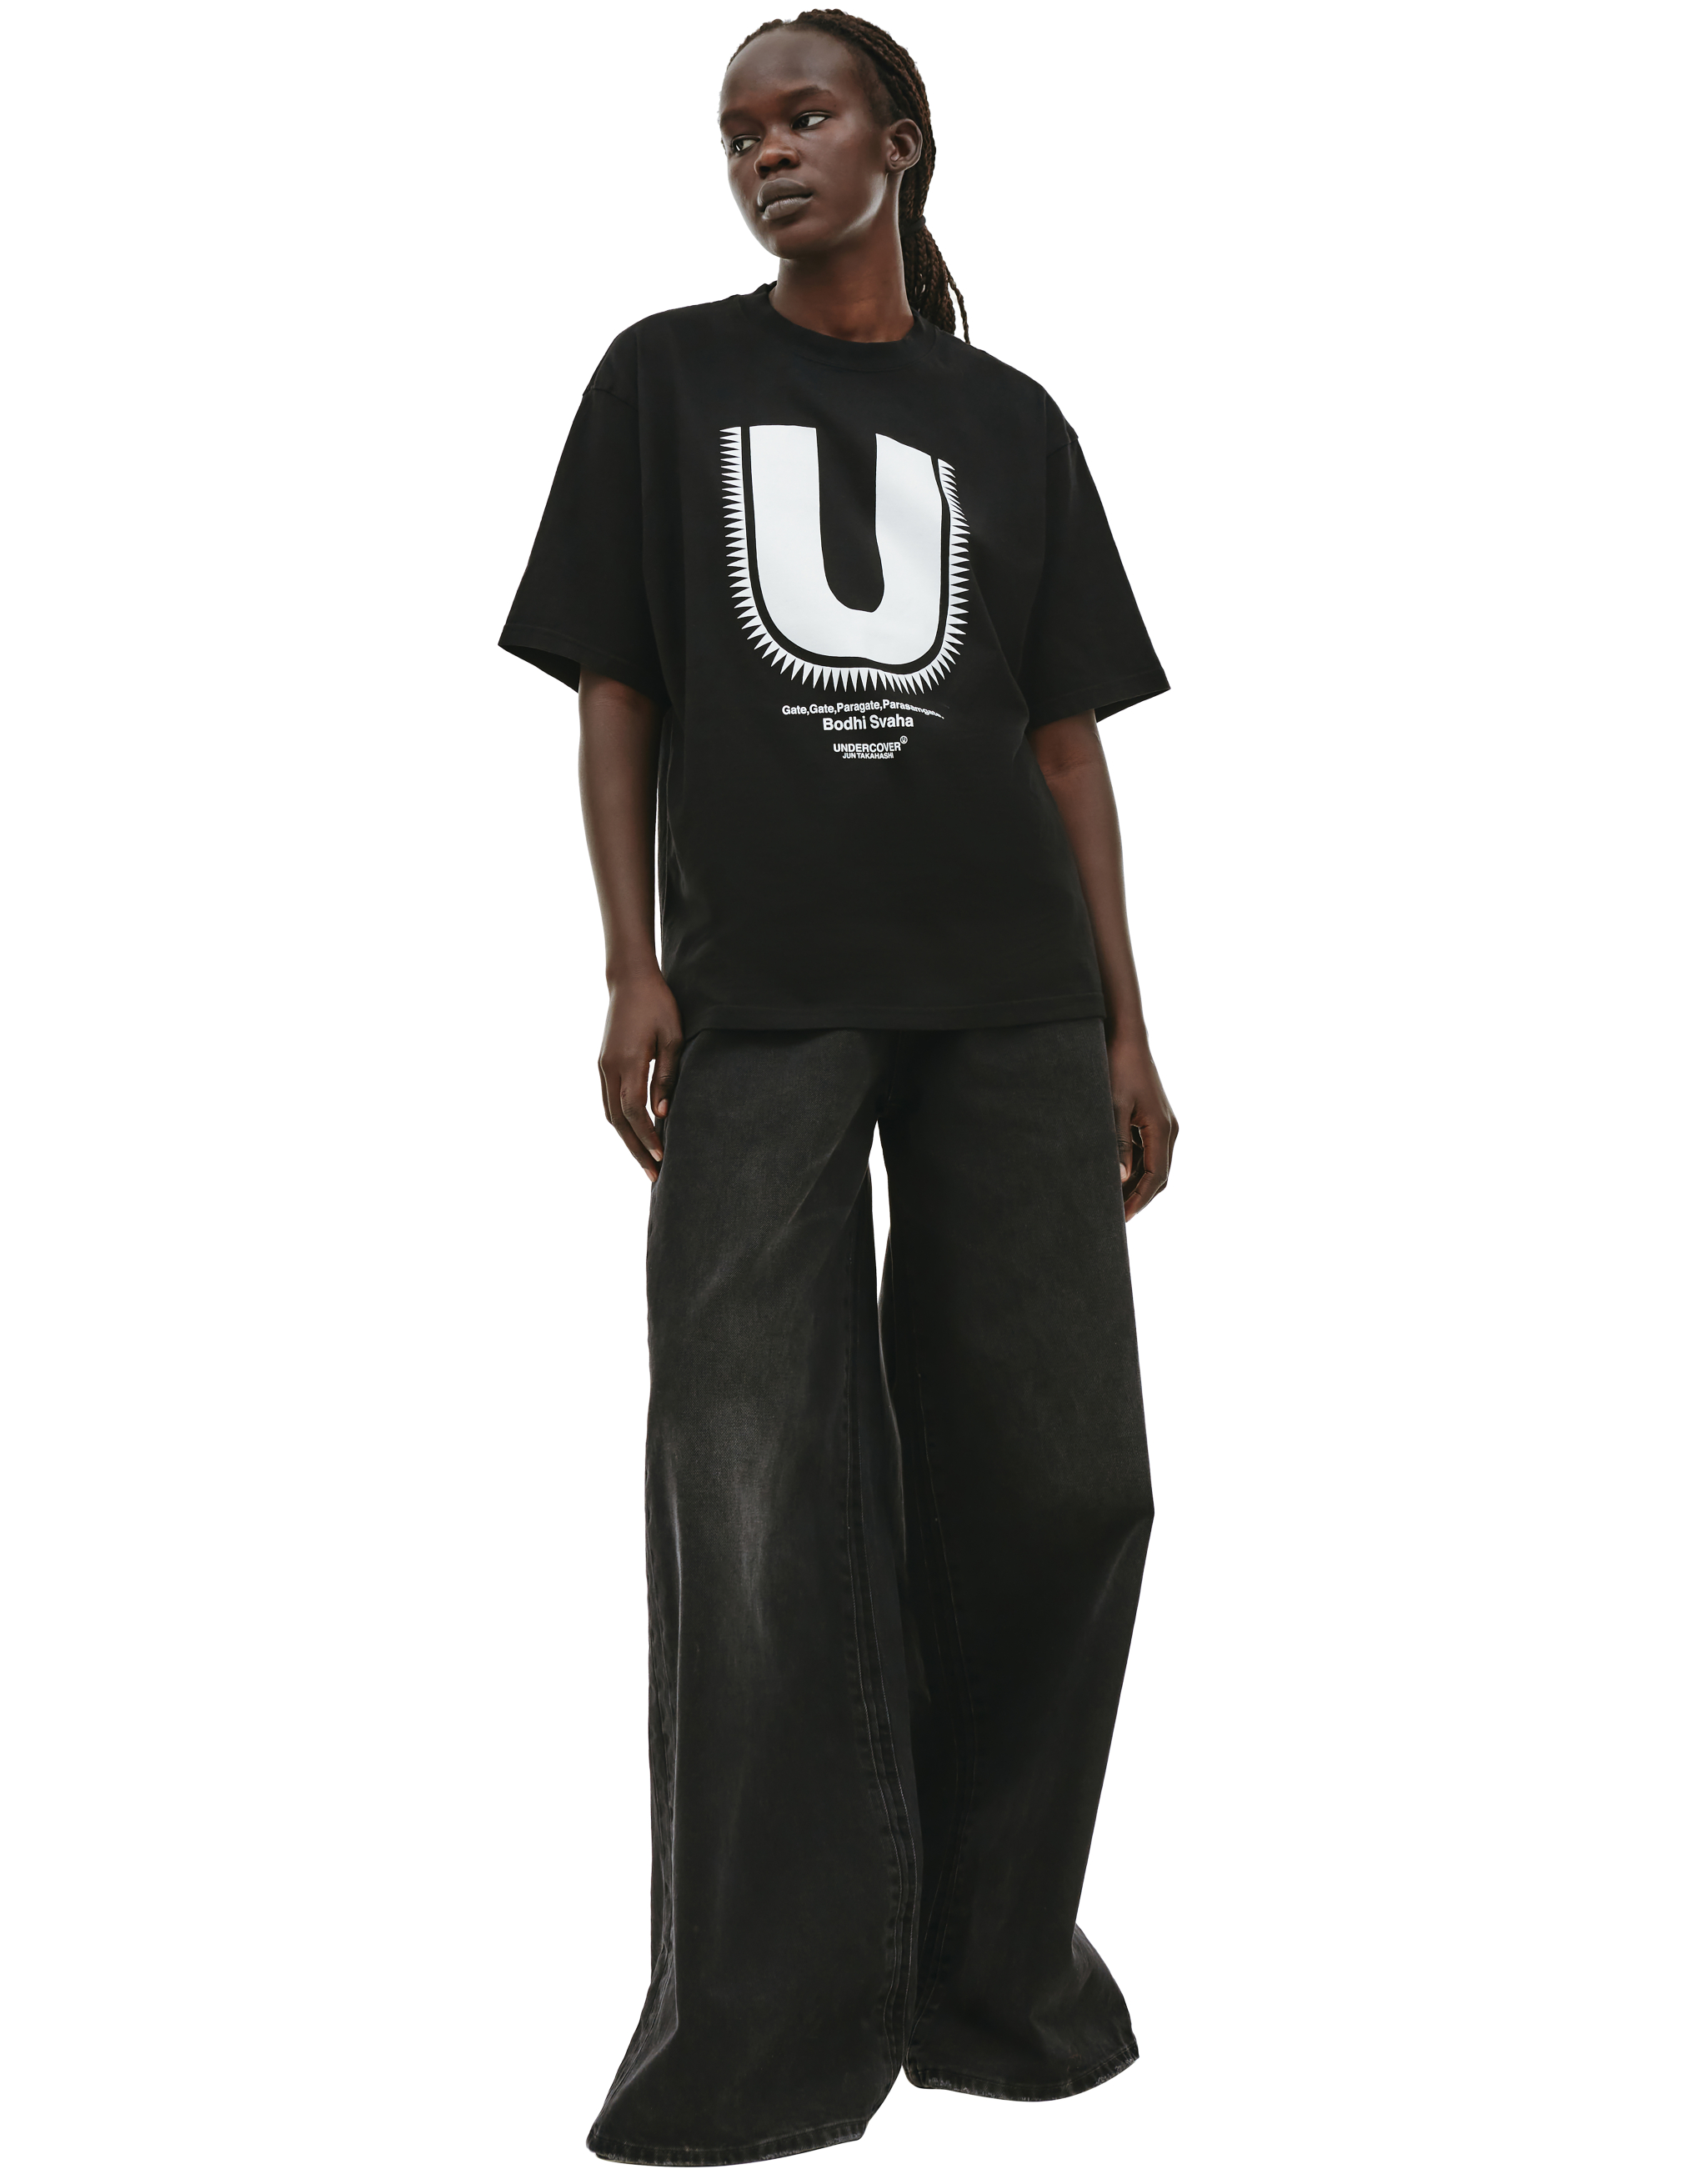 Черная футболка с принтом U Undercover UC2B9803/1/BLACK, размер 5;4 UC2B9803/1/BLACK - фото 1